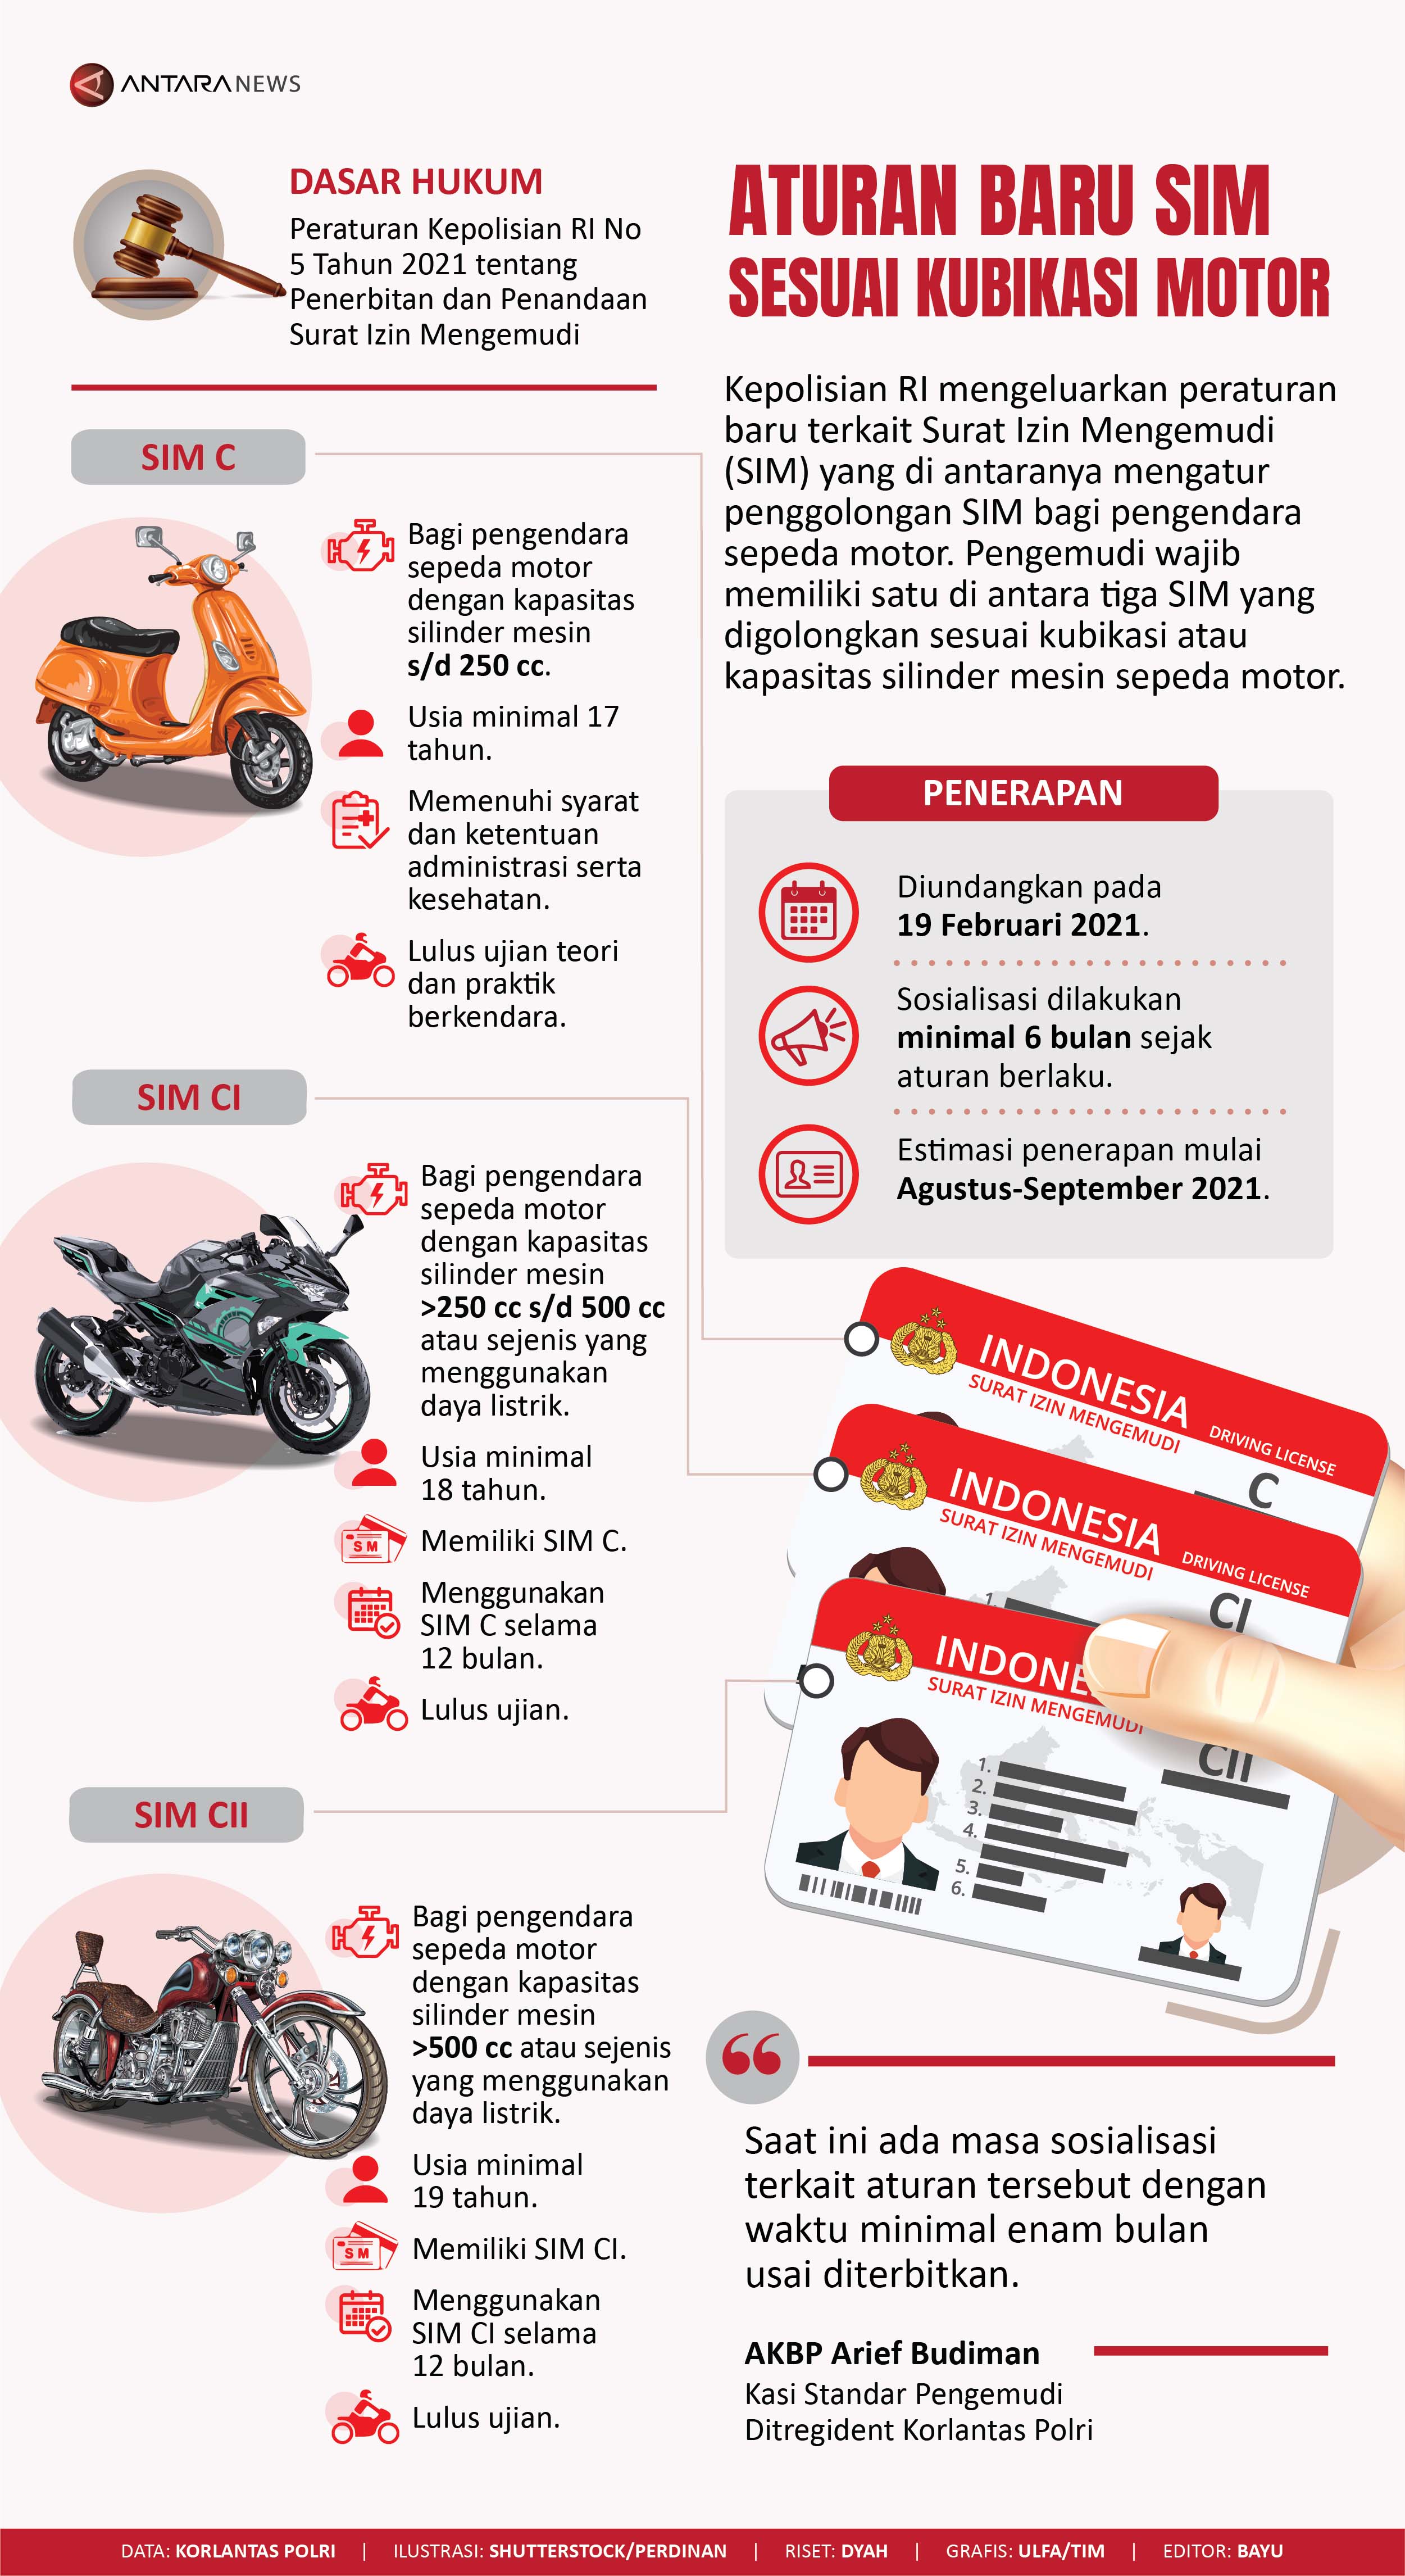 Aturan baru SIM sesuai kubikasi motor